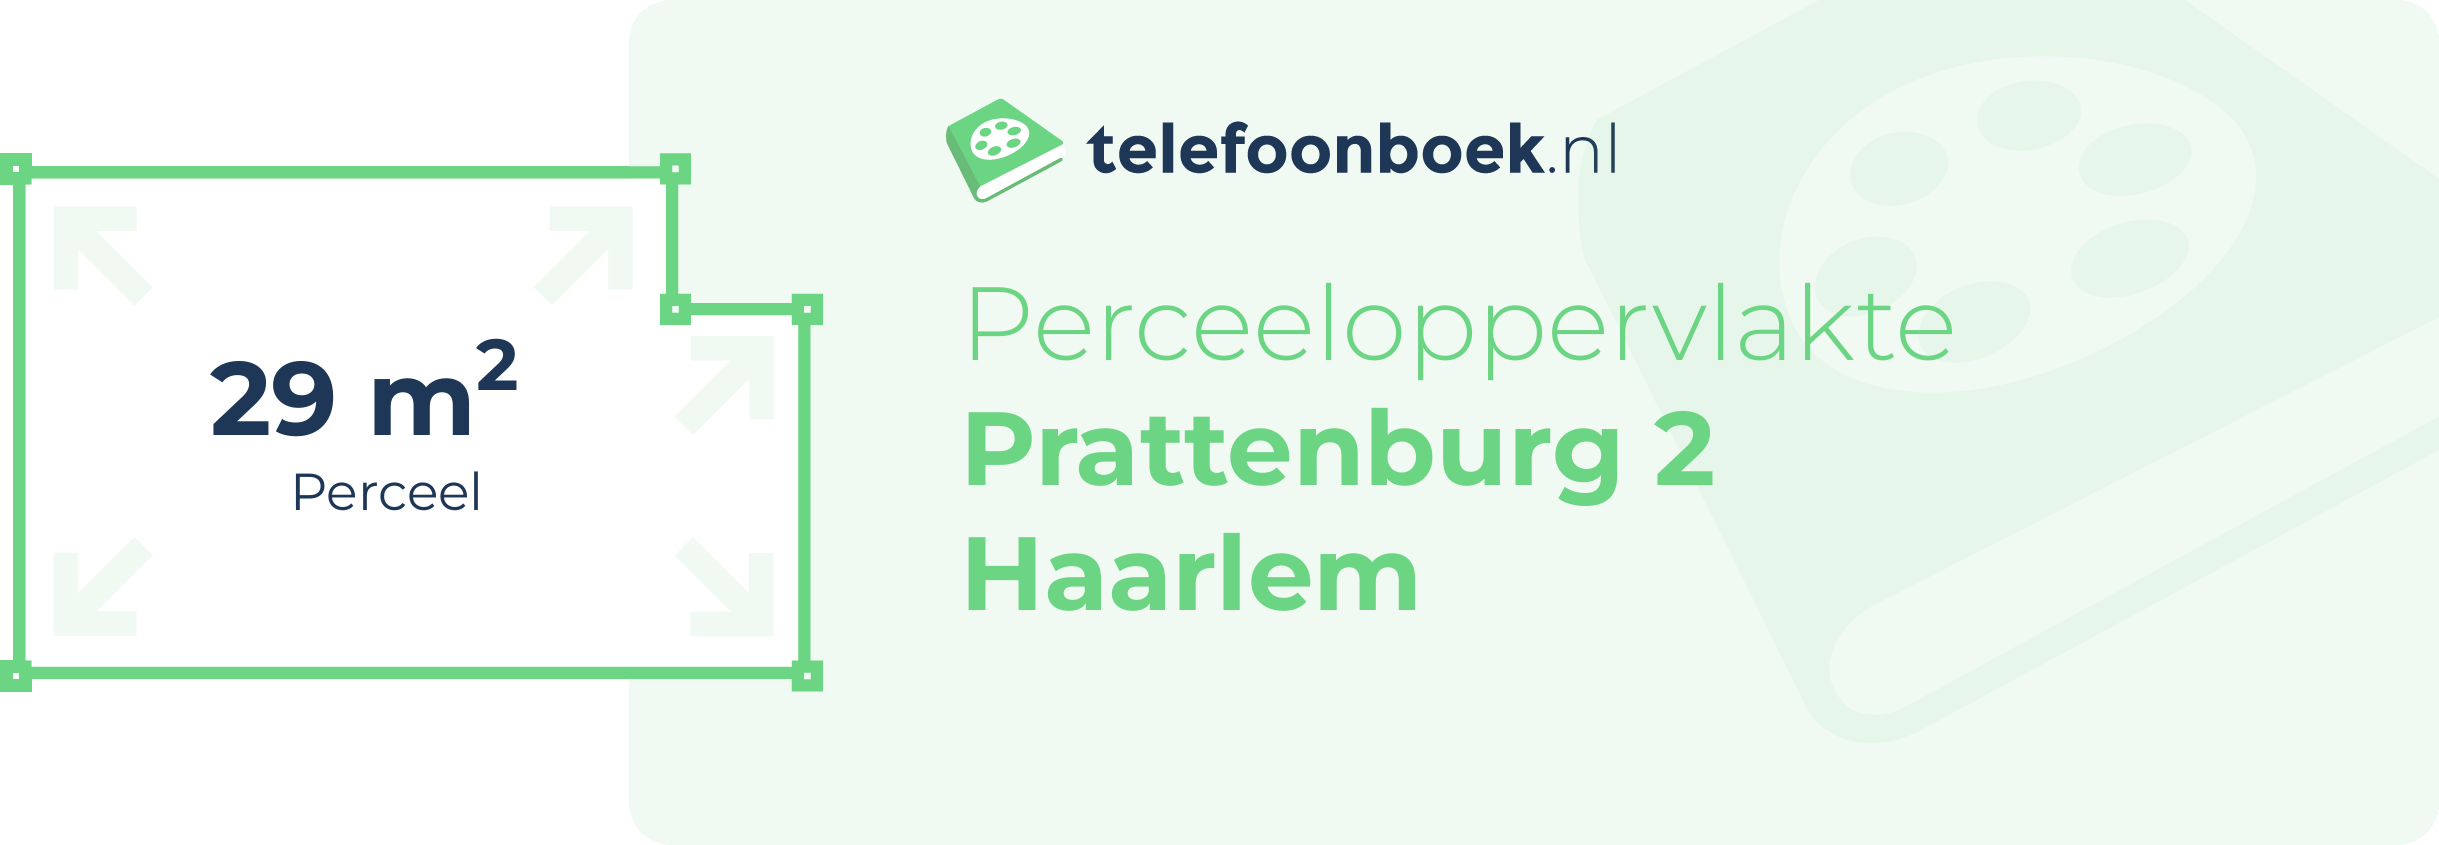 Perceeloppervlakte Prattenburg 2 Haarlem